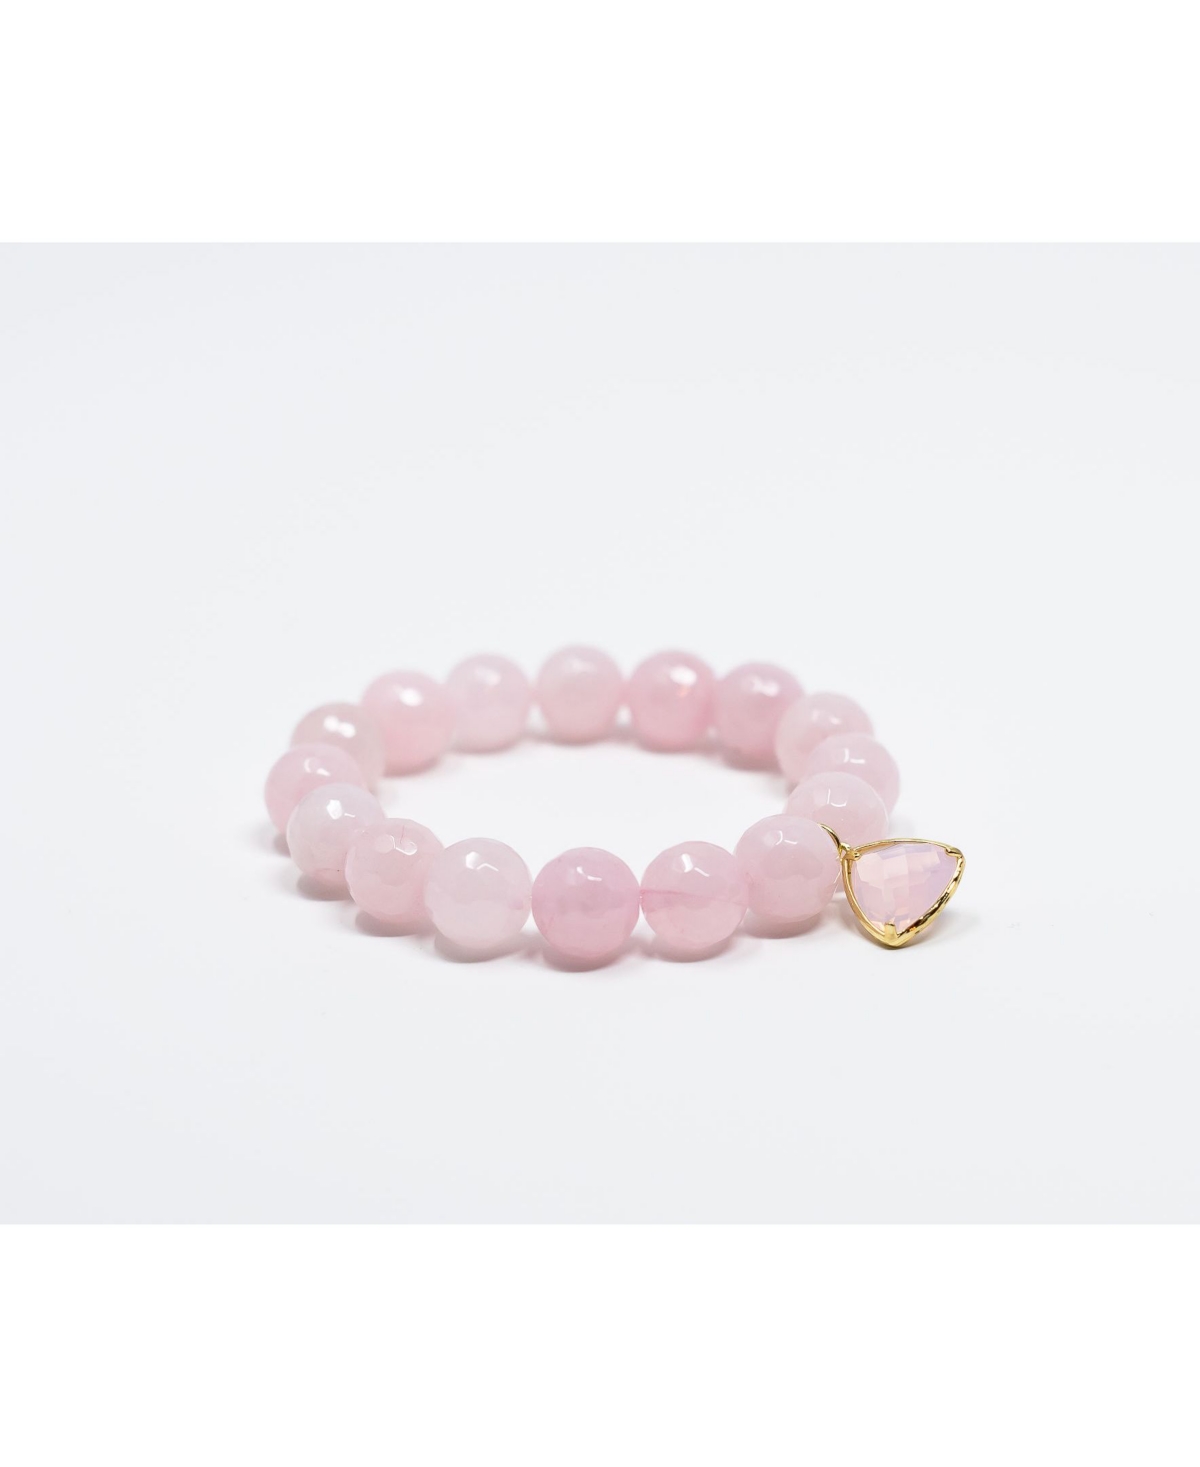 Katie'S Cottage Barn Faceted Rose Quartz Gemstone with Blush Pink Crystal Pendant Bracelet